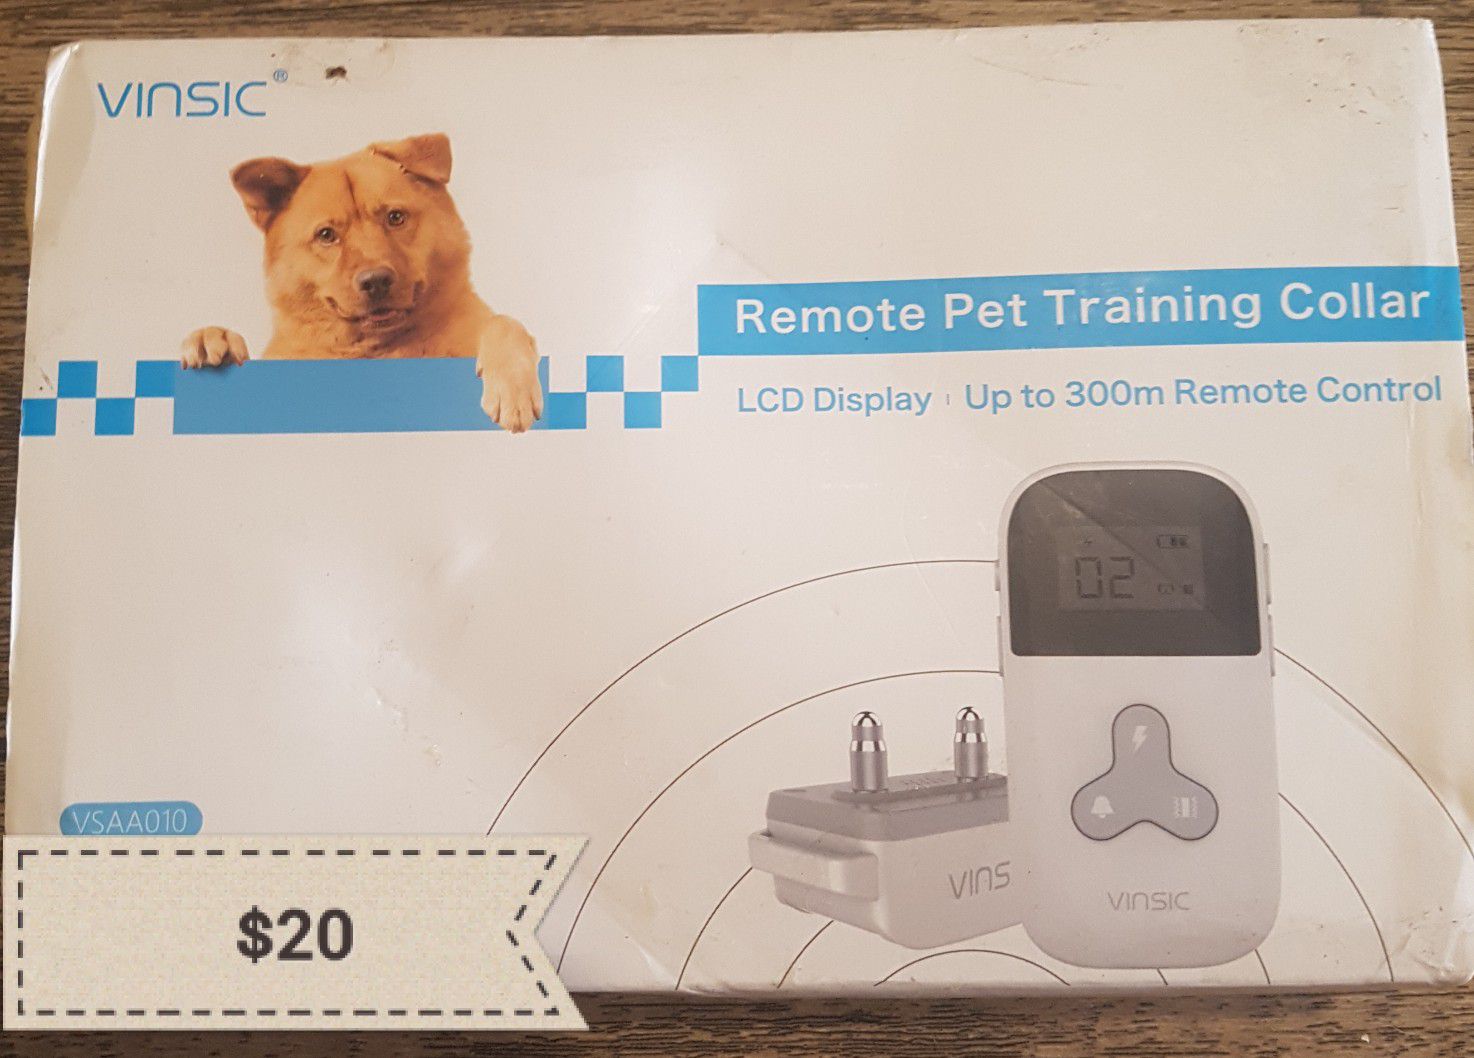 Remote pet training collar